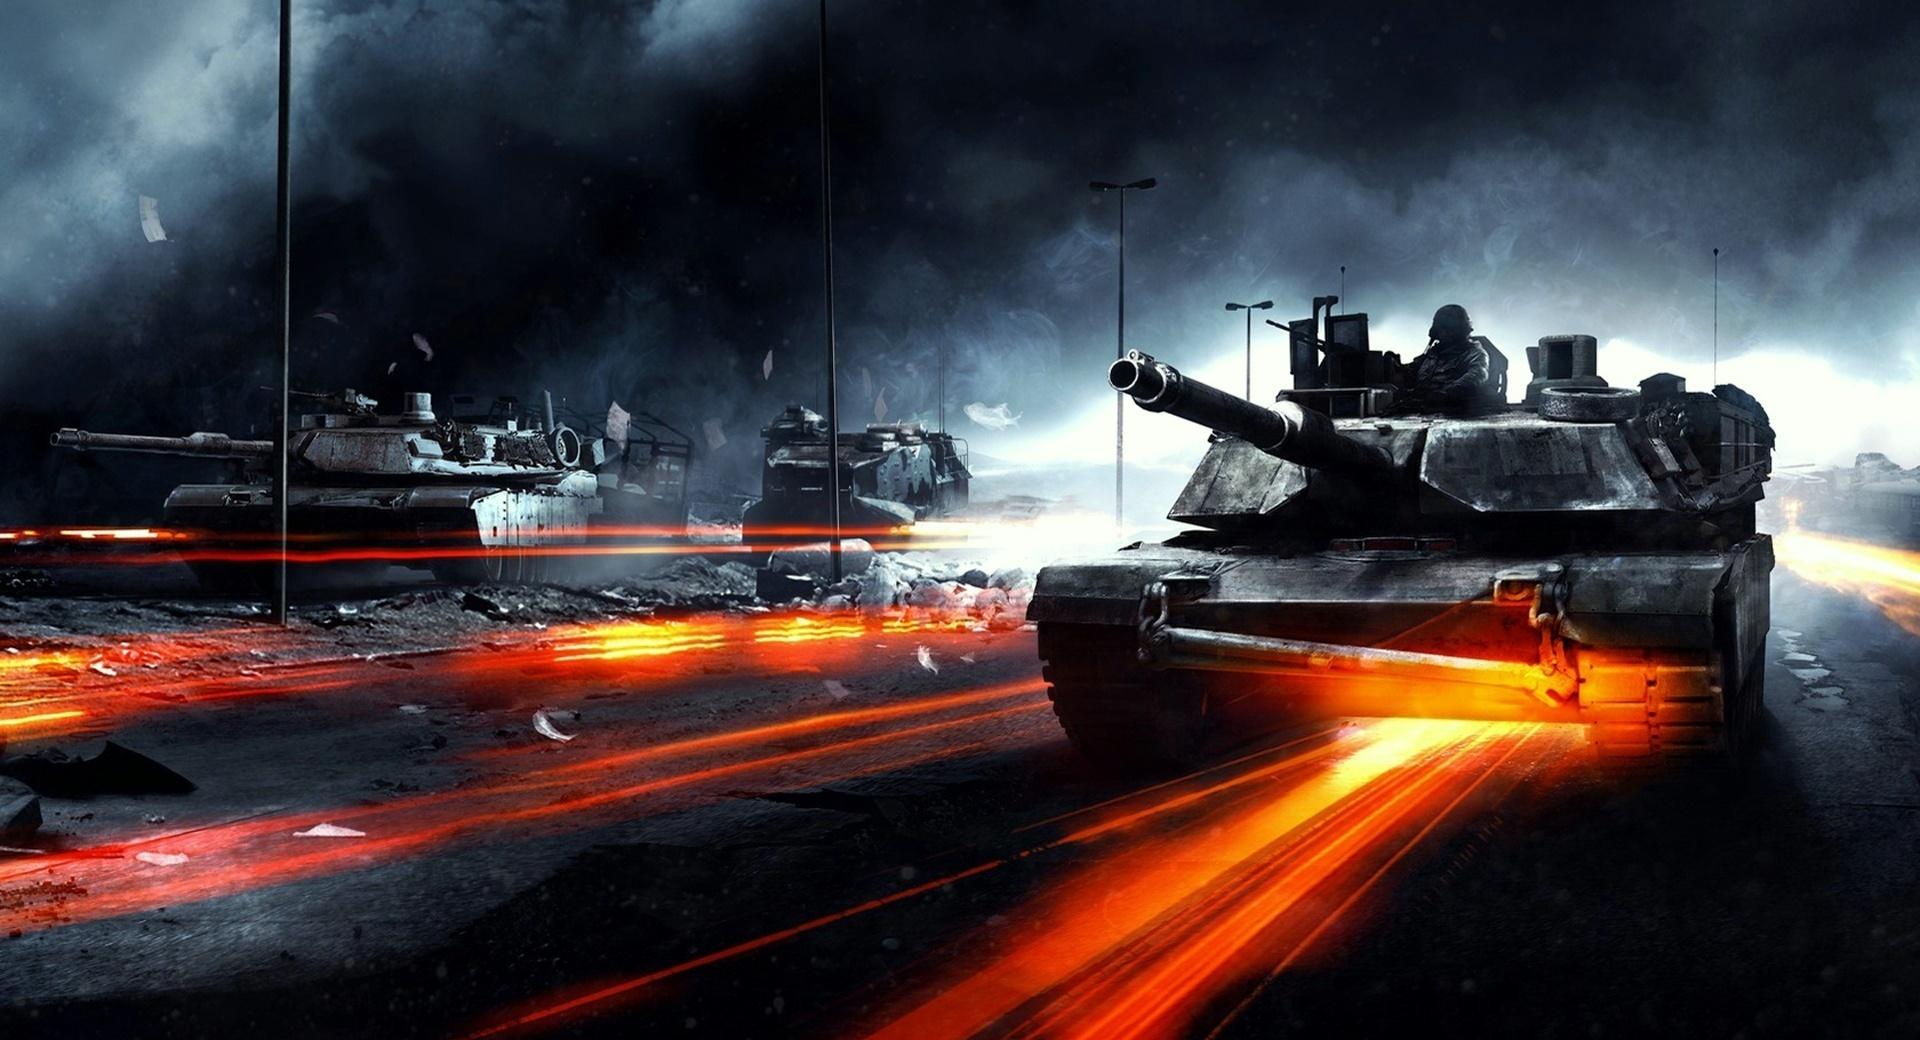 Battlefield 3 - Tanks at 1024 x 1024 iPad size wallpapers HD quality